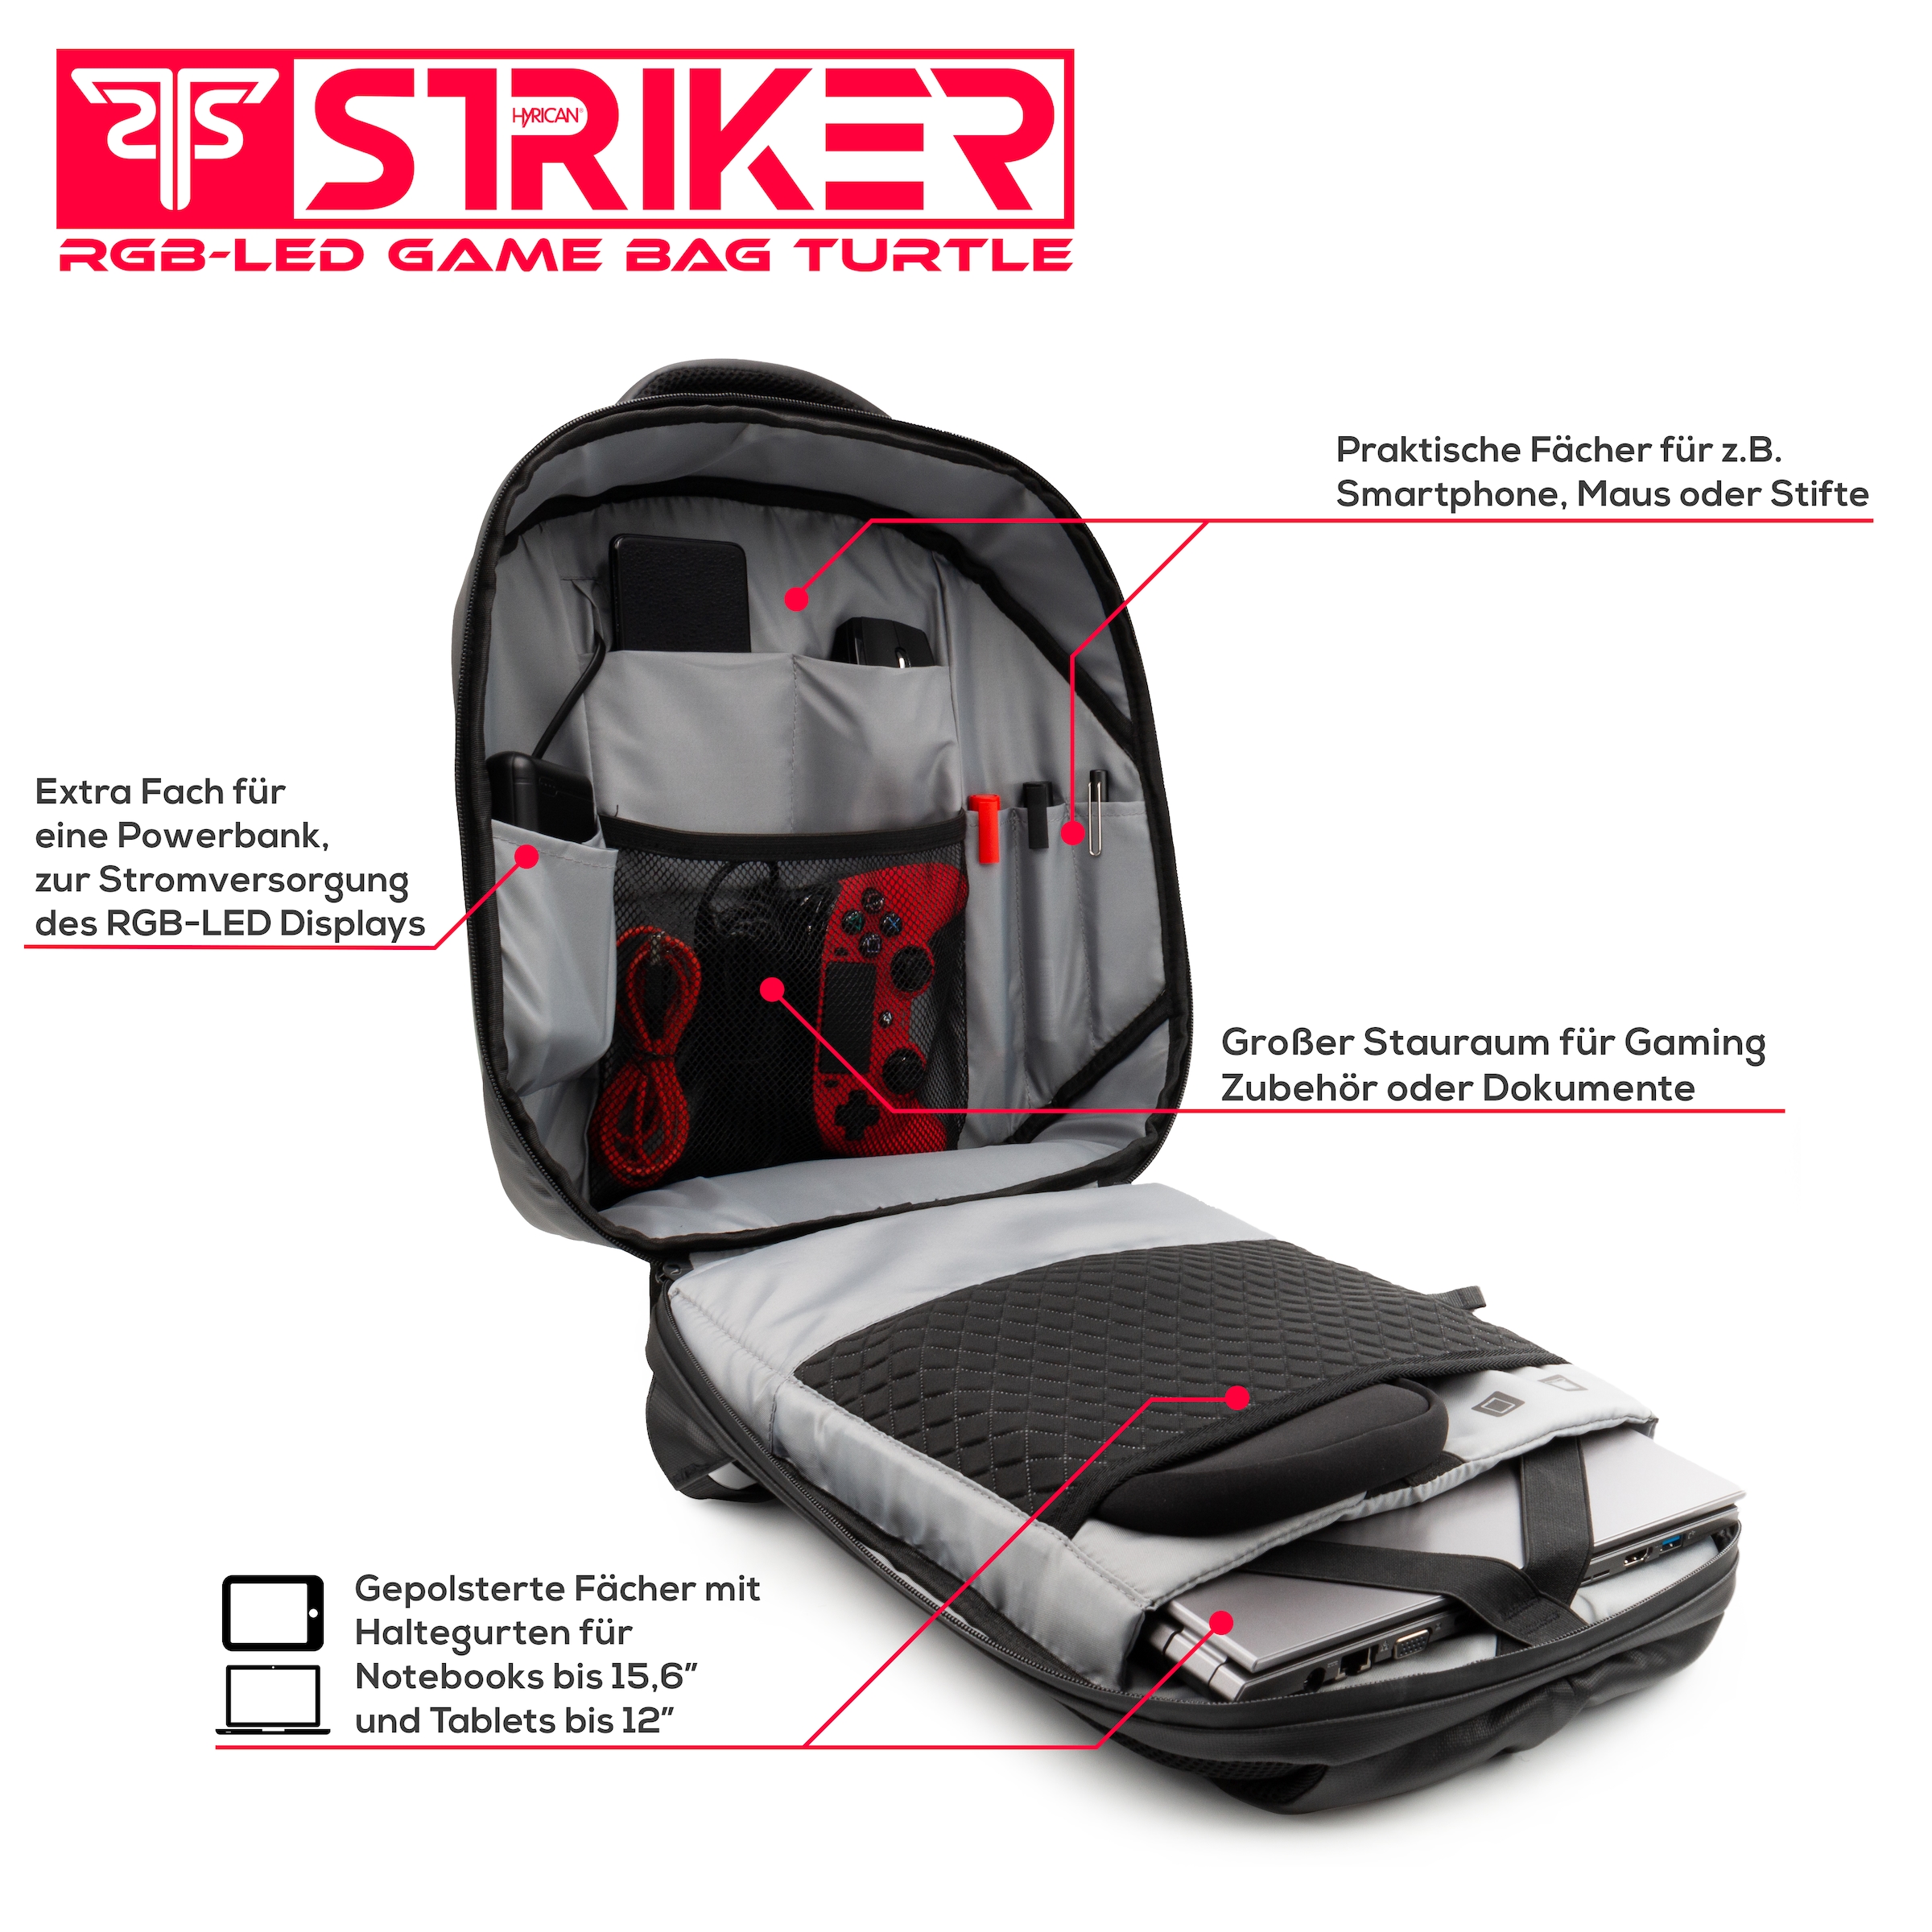 Hyrican Gaming-Laptoprucksack »Striker Game Bag TURTLE NOZ01495« mit App gesteuerte RBG-LED Display, wasserabweisend, gepolstert, für Notebooks bis 15,6 Zoll und Tablets bis 12 Zoll, Geheimfach